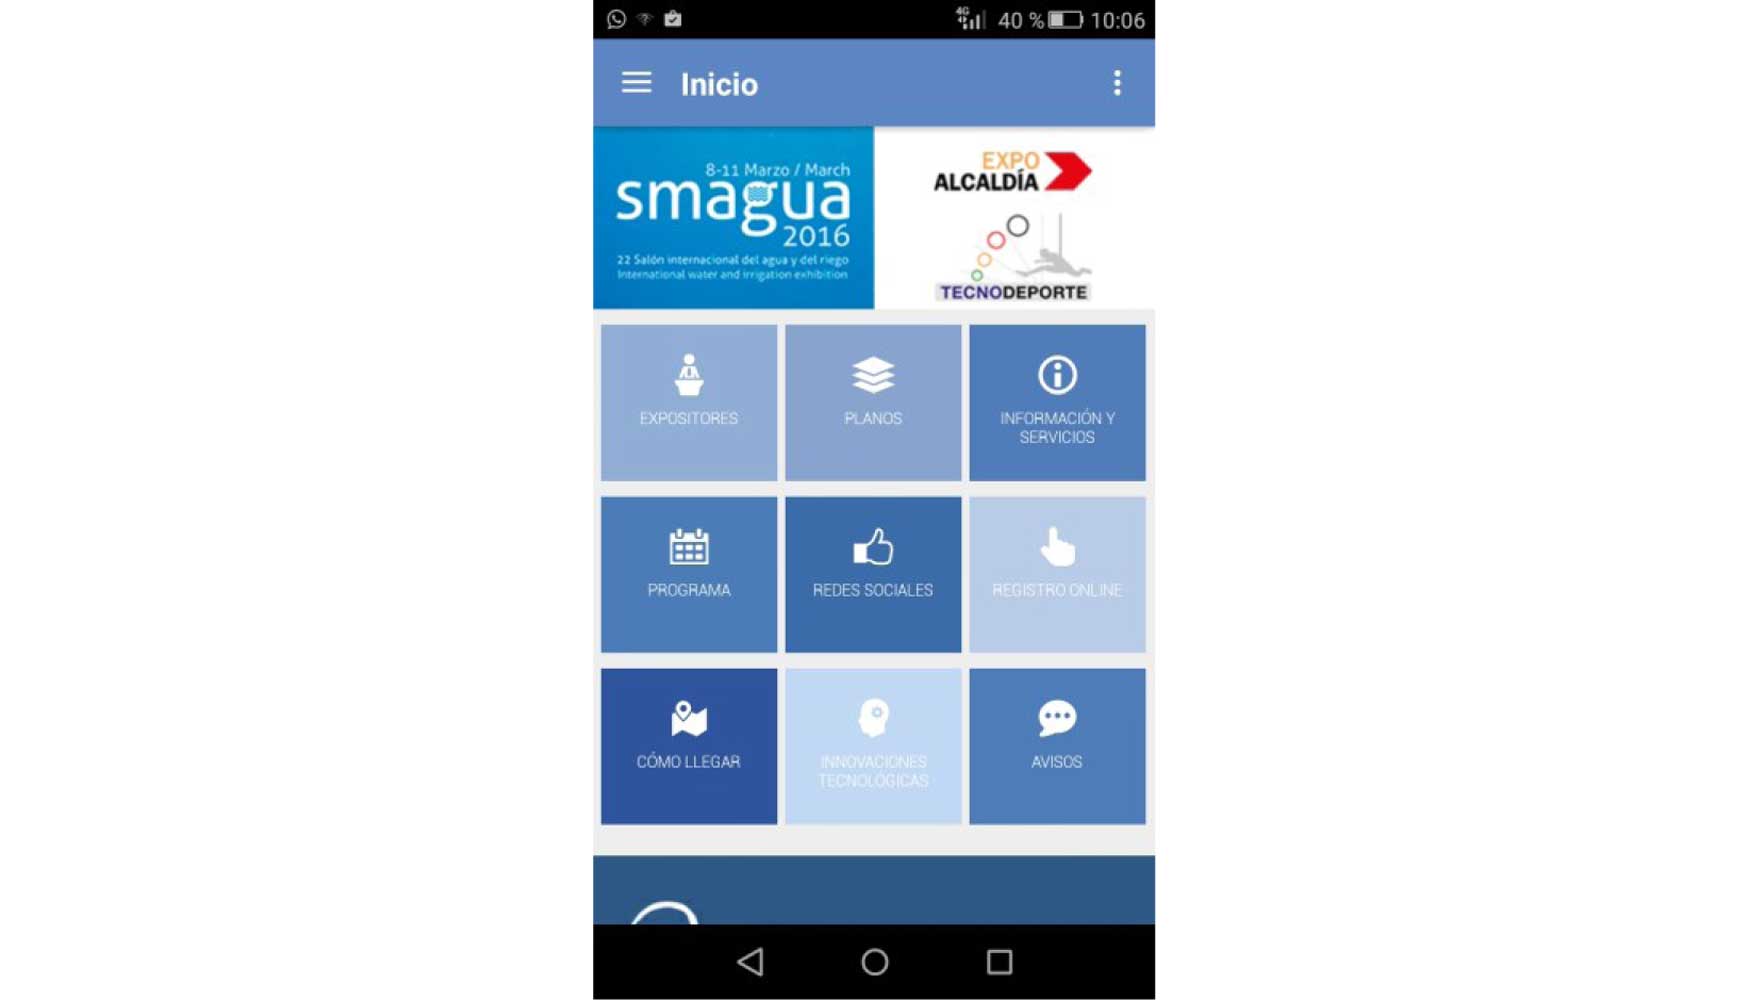 Nueva app de Smagua